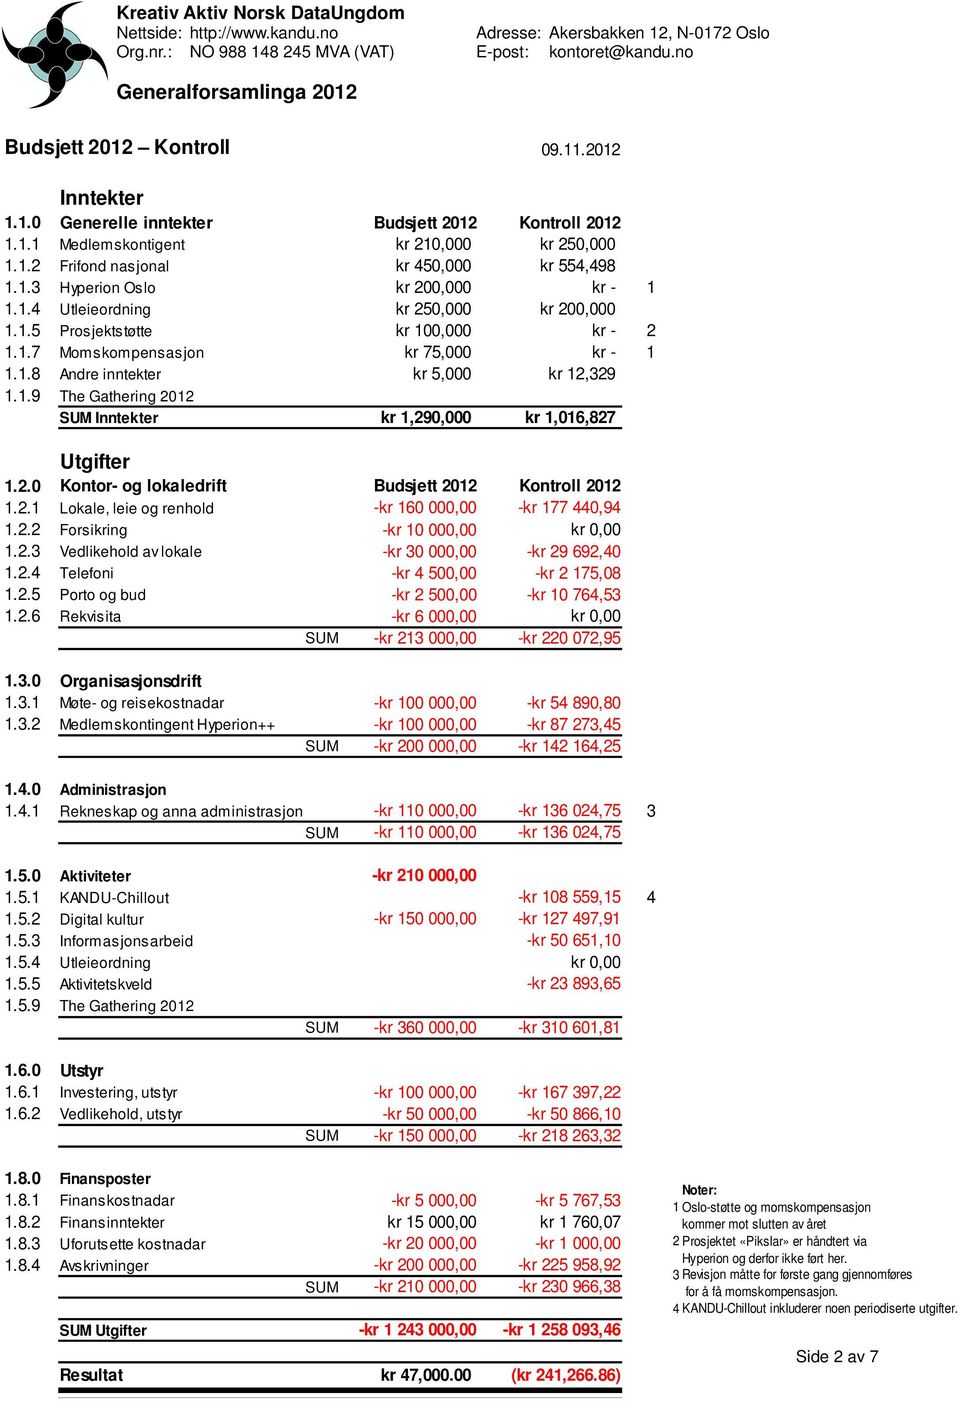 2.0 1.2.1 1.2.2 Kontor- og lokaledrift Lokale, leie og renhold Forsikring Budsjett 2012 -kr 160 000,00 -kr 10 000,00 Kontroll 2012 -kr 177 440,94 kr 0,00 1.2.3 1.2.4 1.2.5 1.2.6 Vedlikehold av lokale Telefoni Porto og bud Rekvisita -kr 30 000,00 -kr 4 500,00 -kr 2 500,00 -kr 6 000,00 -kr 29 692,40 -kr 2 175,08 -kr 10 764,53 kr 0,00 SUM -kr 213 000,00 -kr 220 072,95 1.